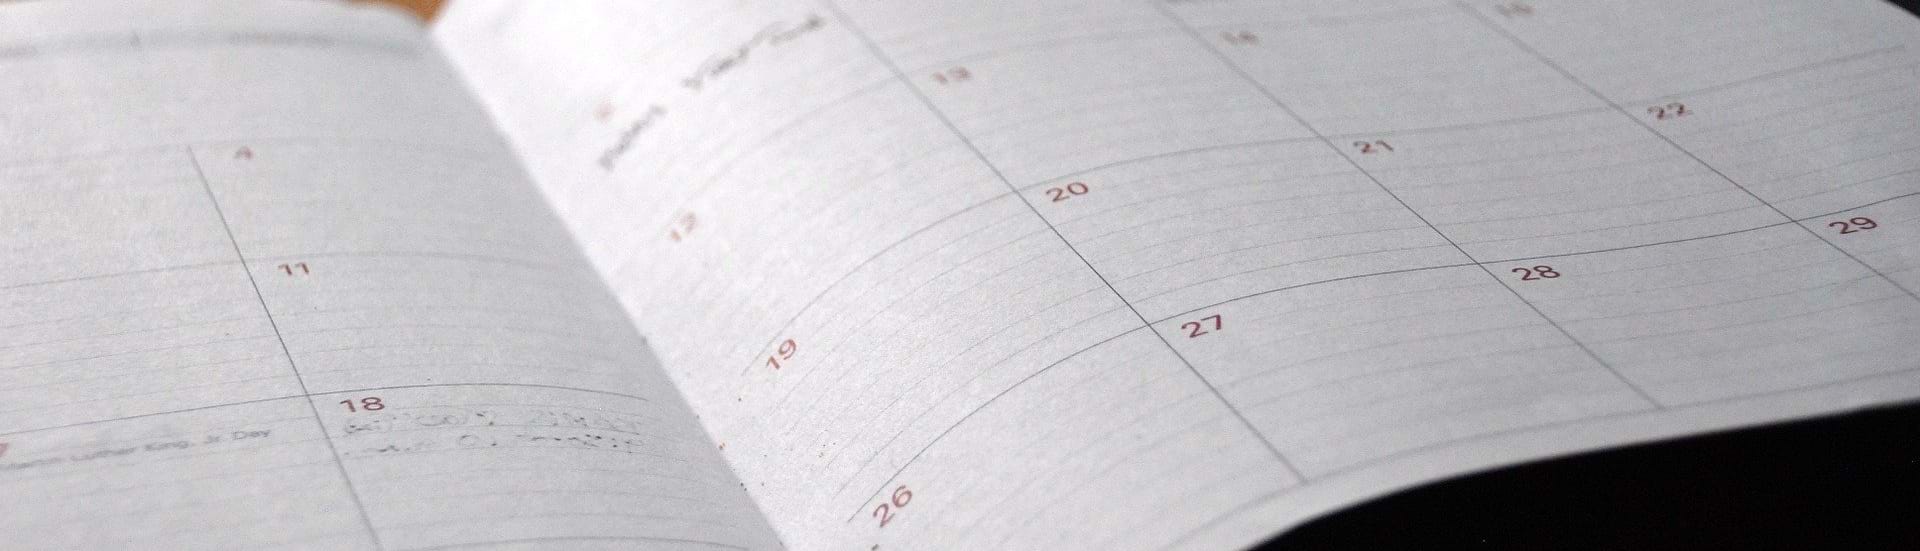 En papirkalender ligger opslået på et bord.